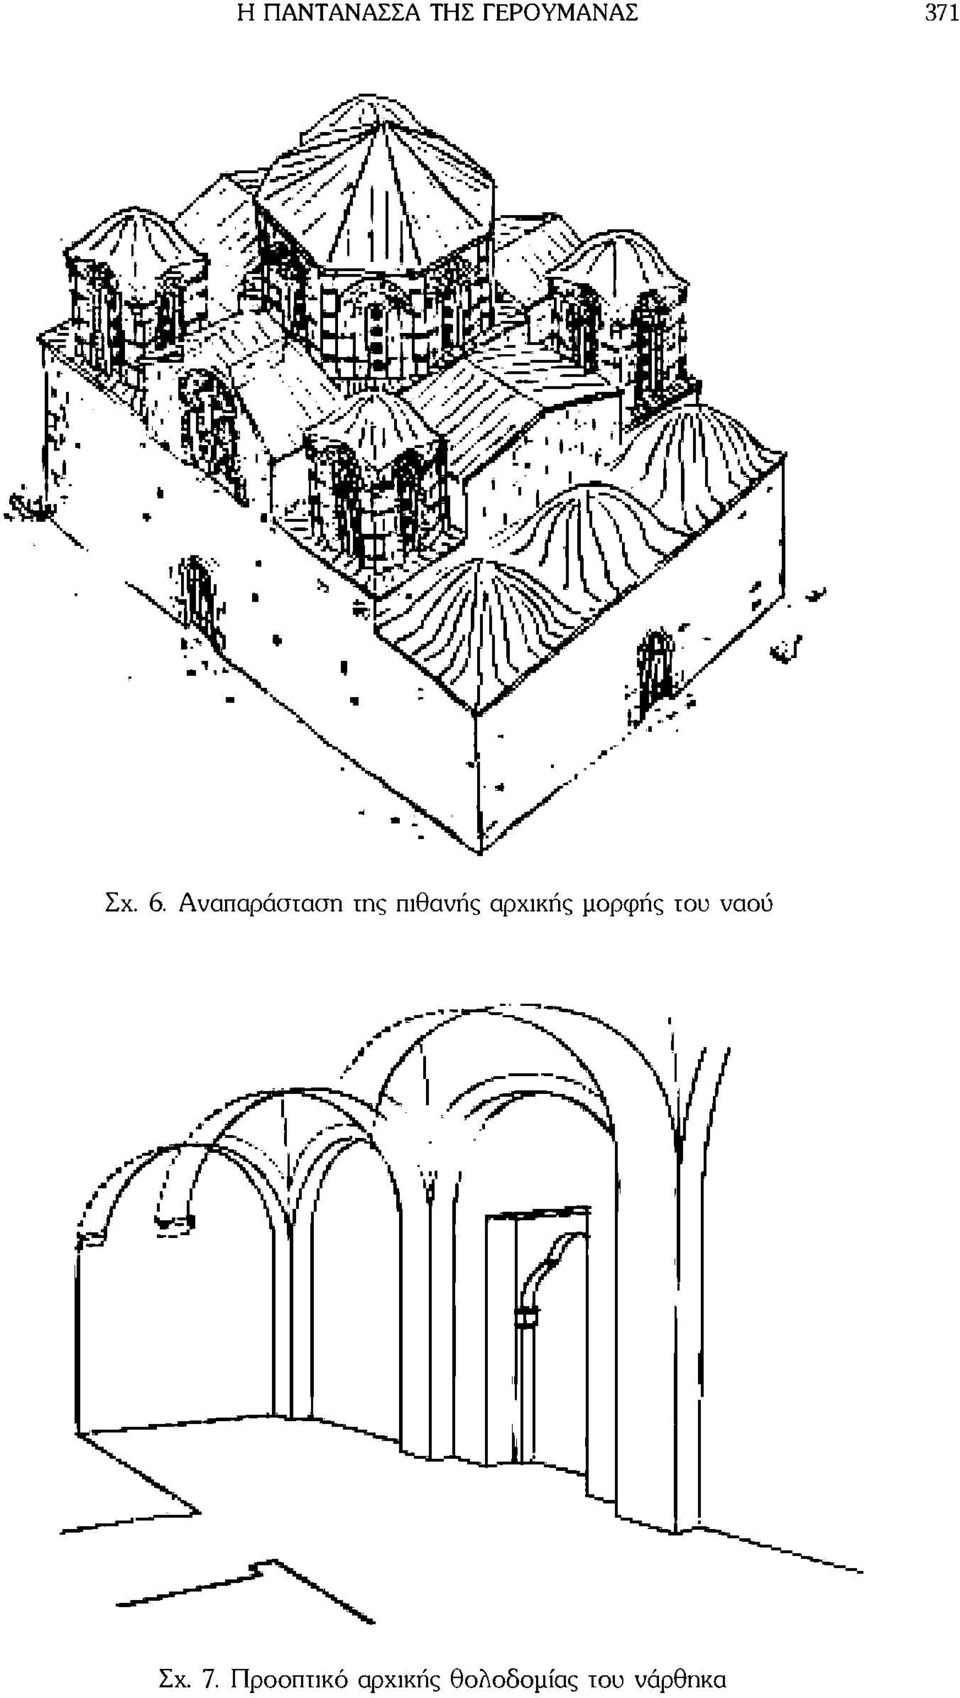 αρχικής μορφής του ναού Σχ. 7.